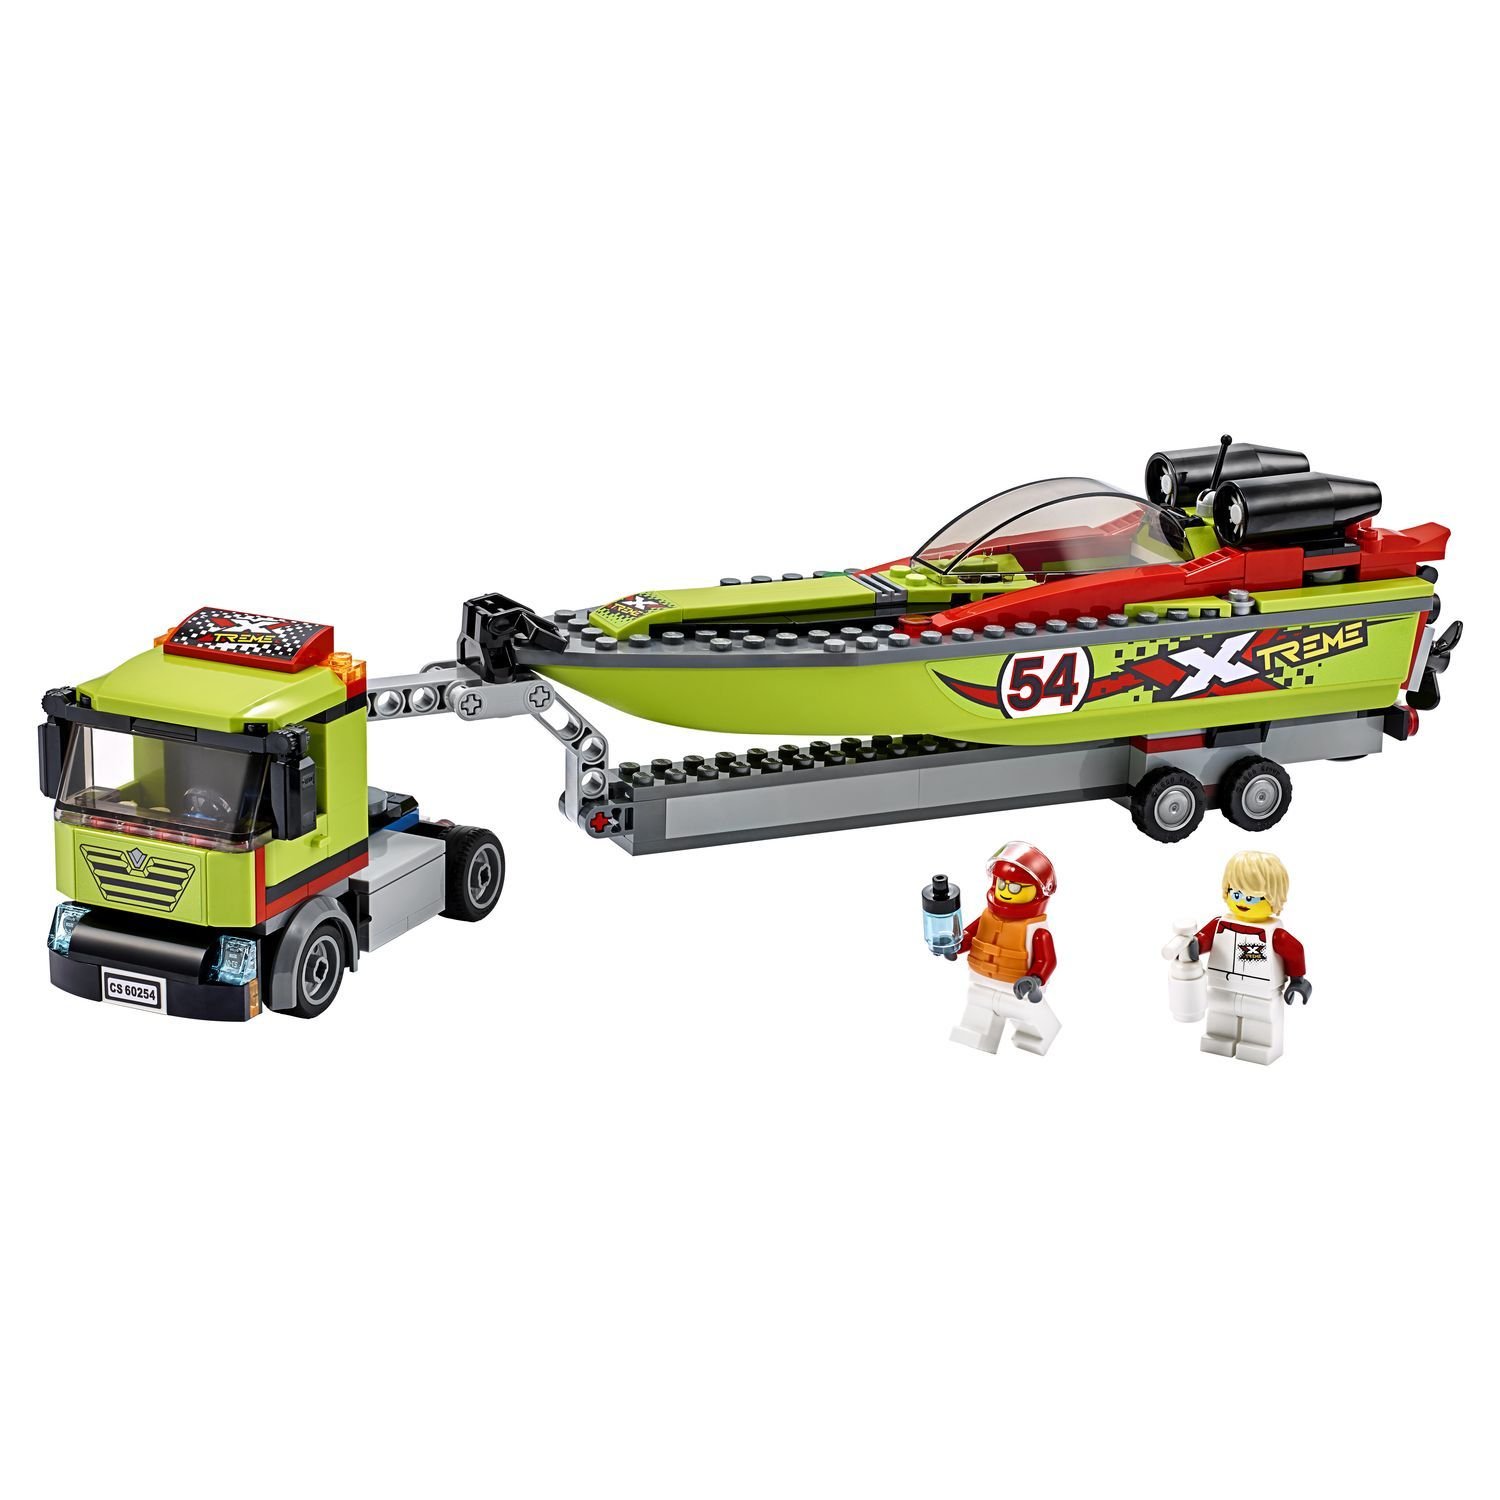 Lego City 60254 Транспортировщик скоростных катеров